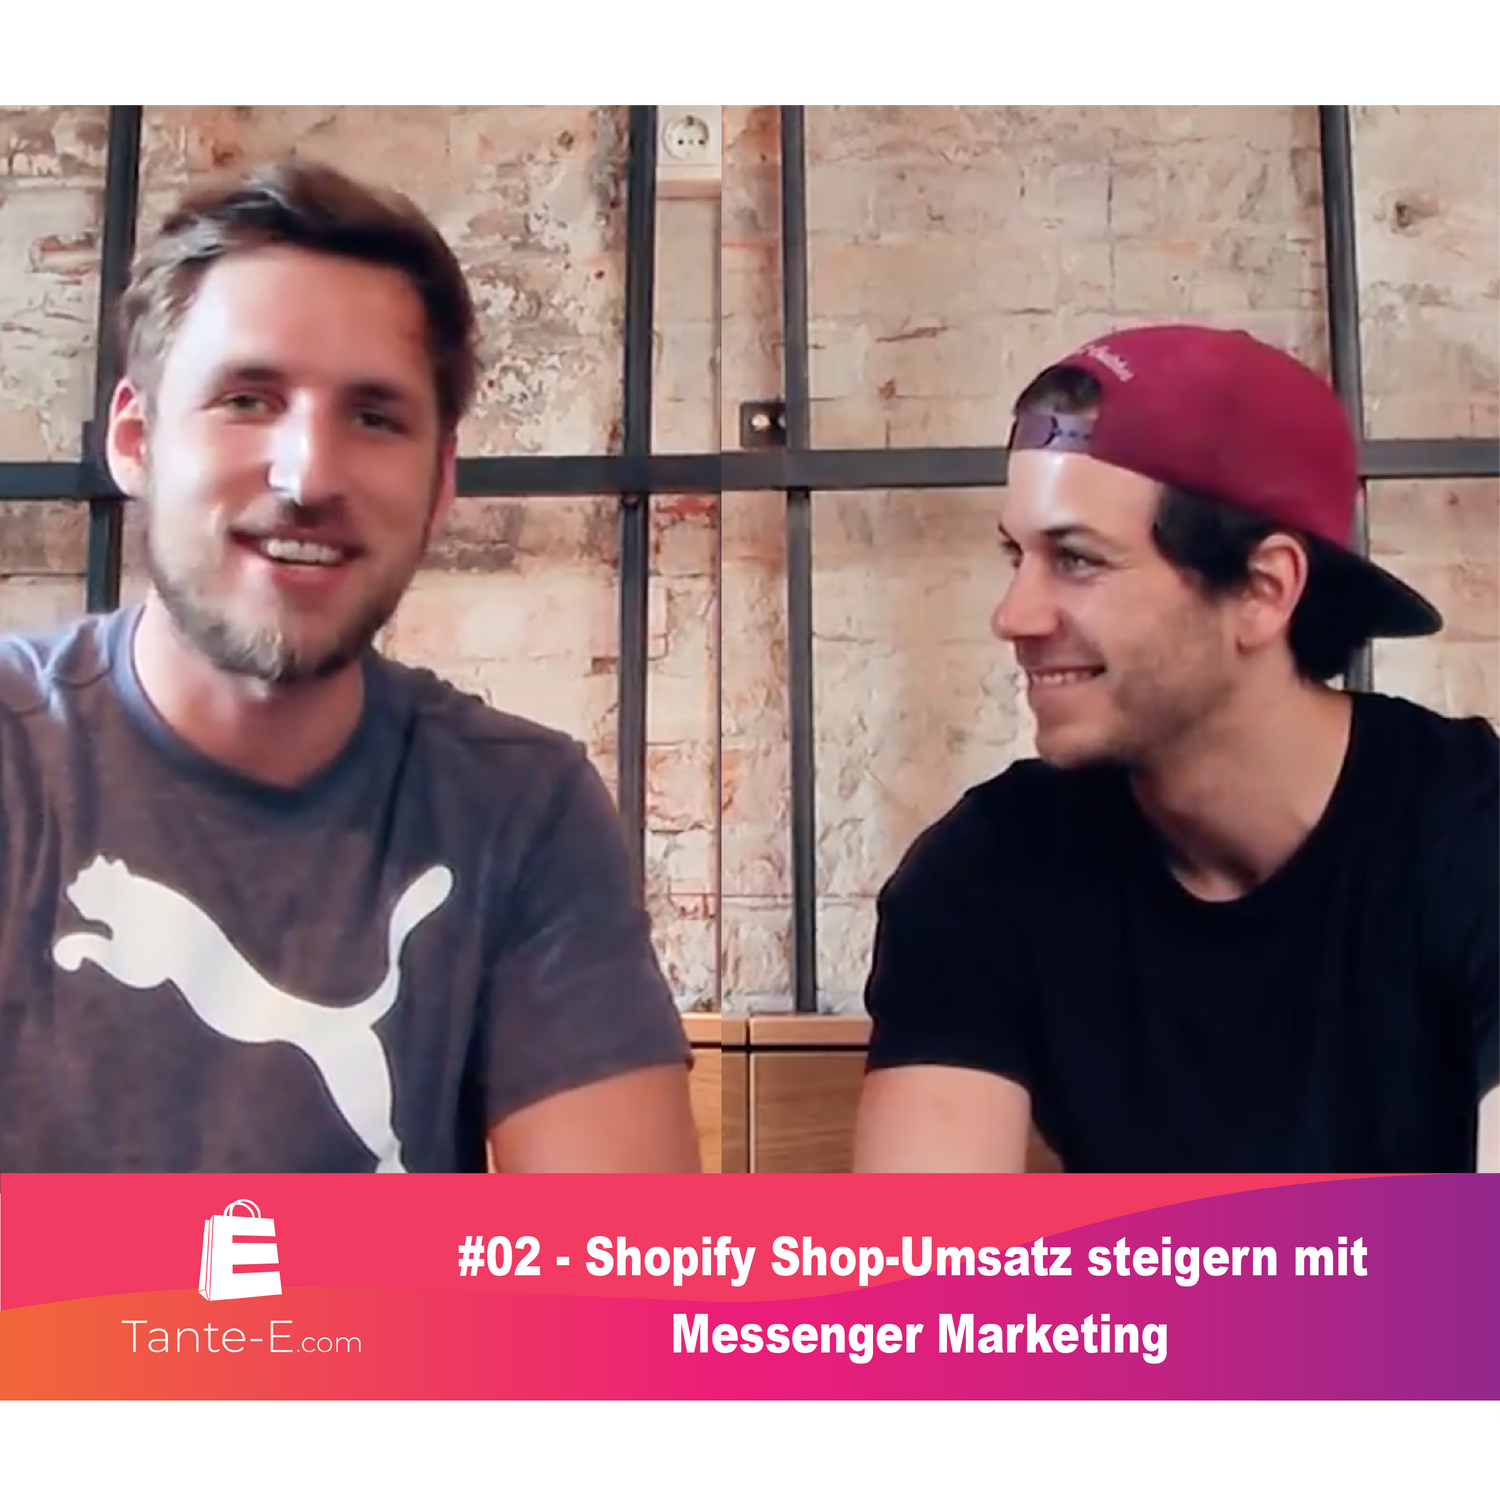 #02 - Shopify Shop-Umsatz steigern mit Messenger Marketing